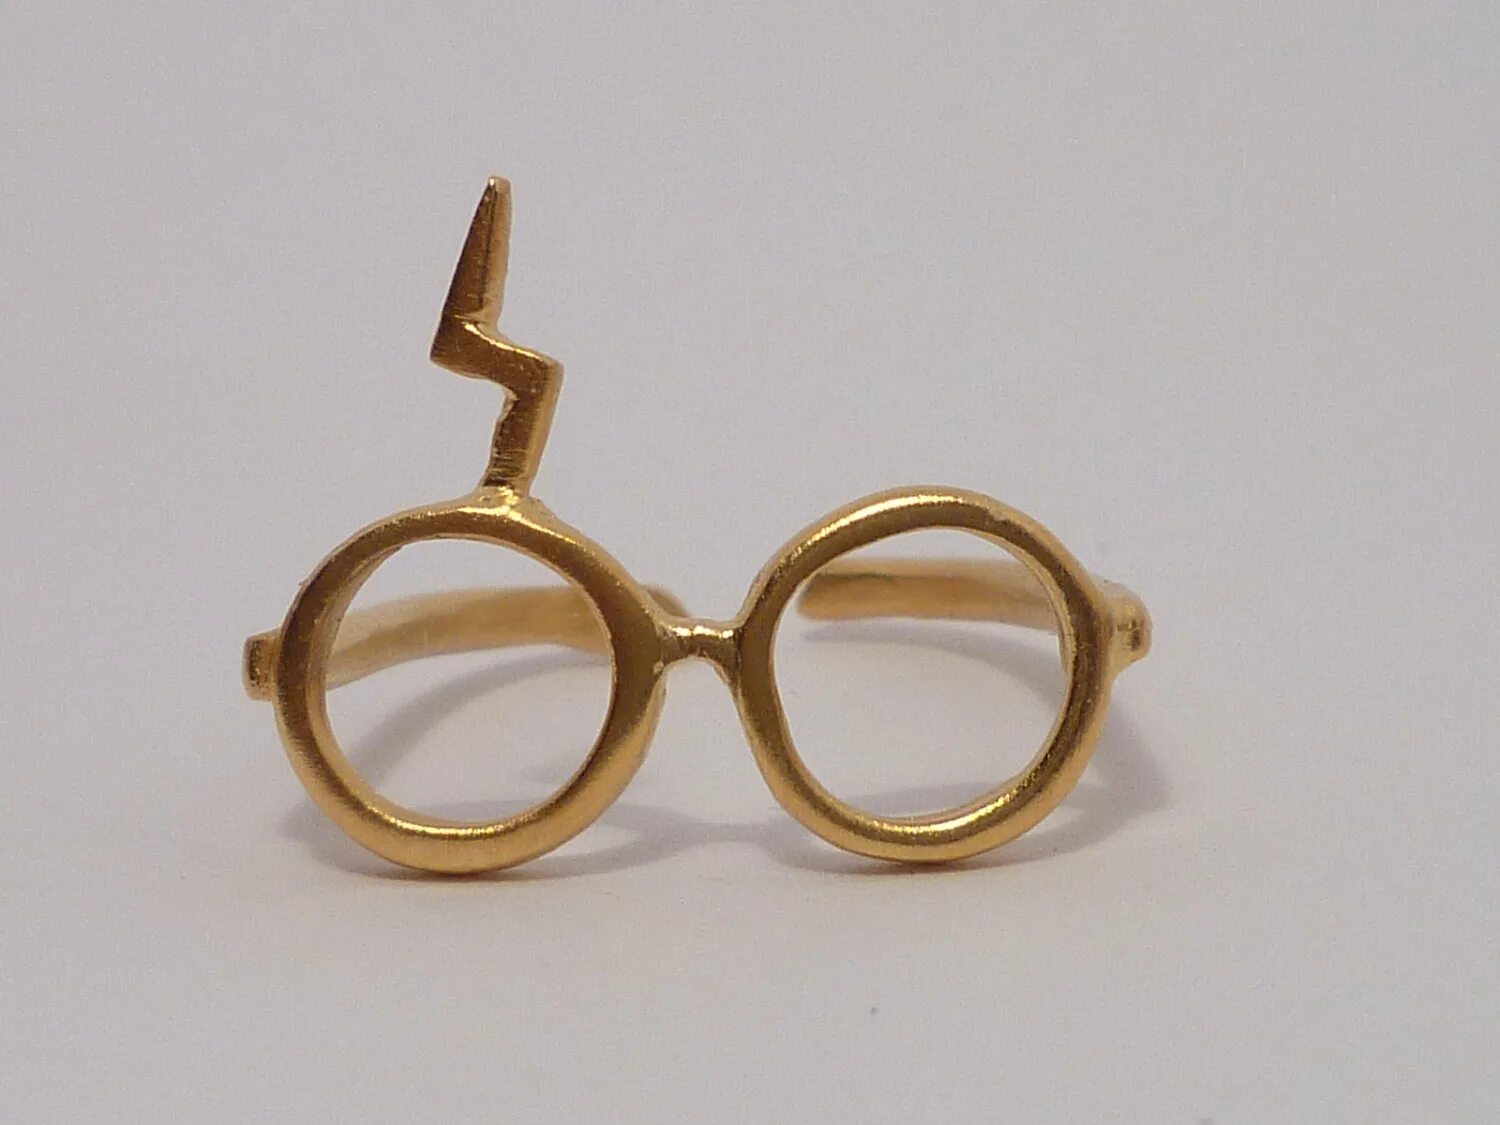 Ring glasses